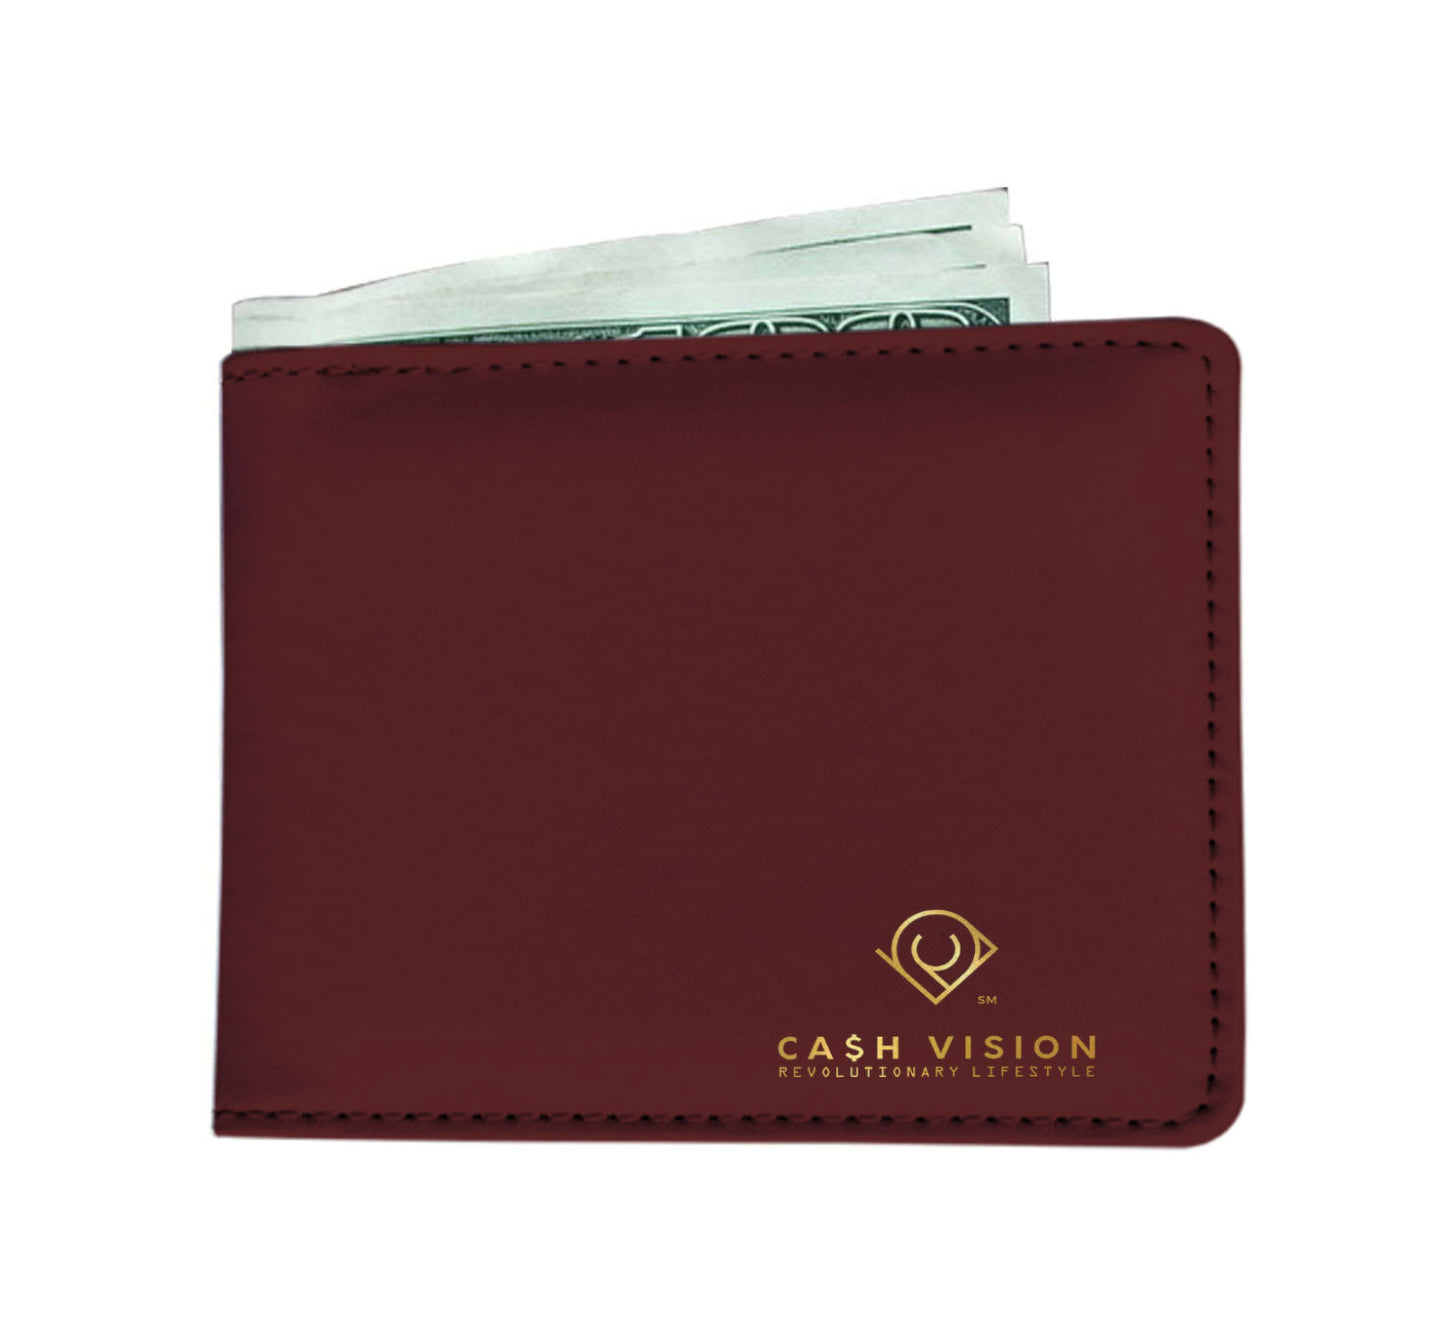 Cash Vision Wallet - Maroon